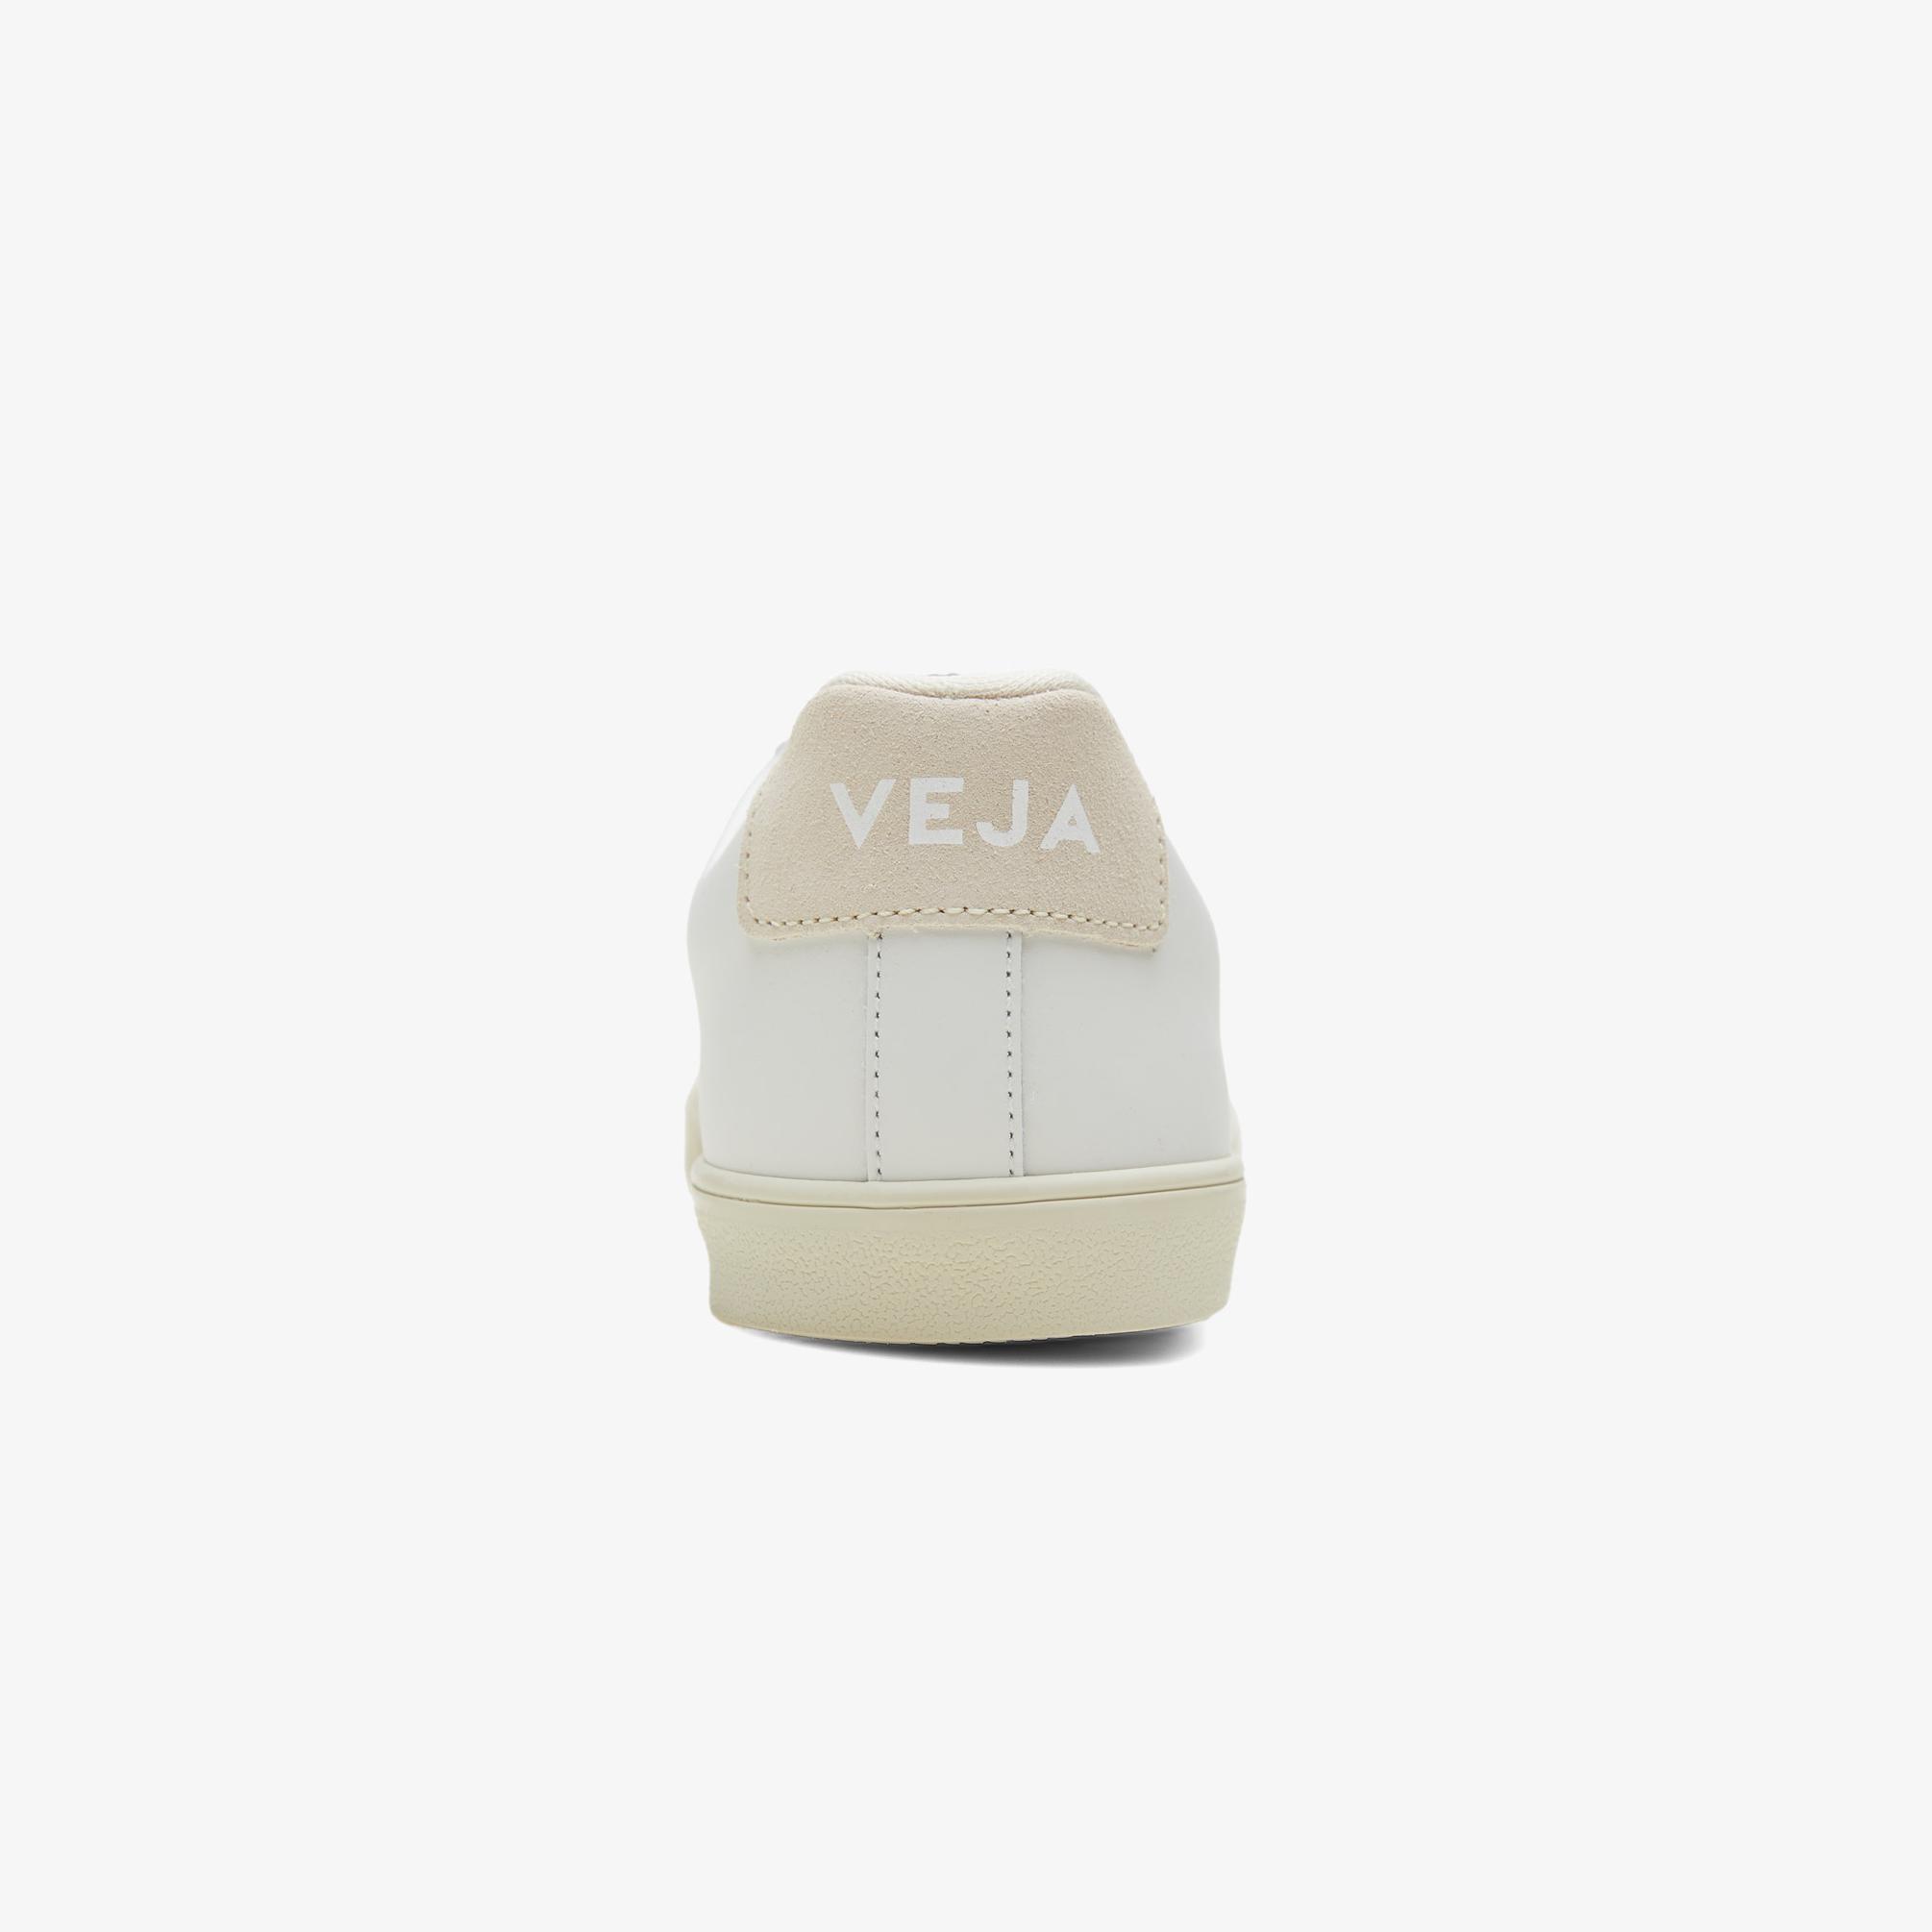  Veja Esplar Logo Leather Kadın Beyaz Sneaker